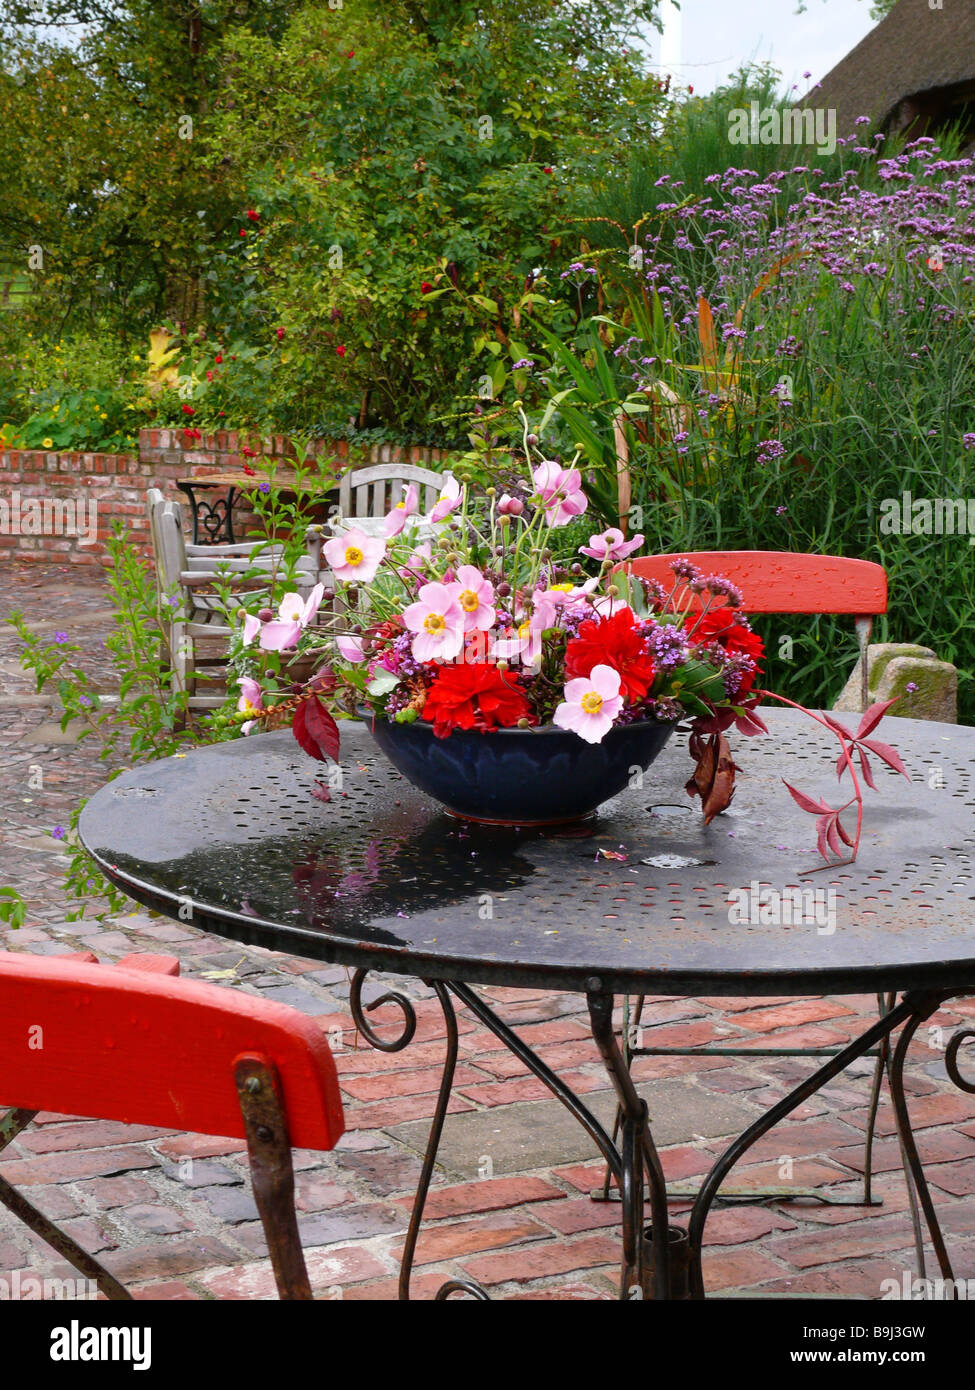 Gartenmöbel Blume-Schale Garten-Terrasse Garten-Gartentisch Stühle Tisch  Schale Blumen-Schmuck Blumen-Terrassenmöbel Stockfotografie - Alamy